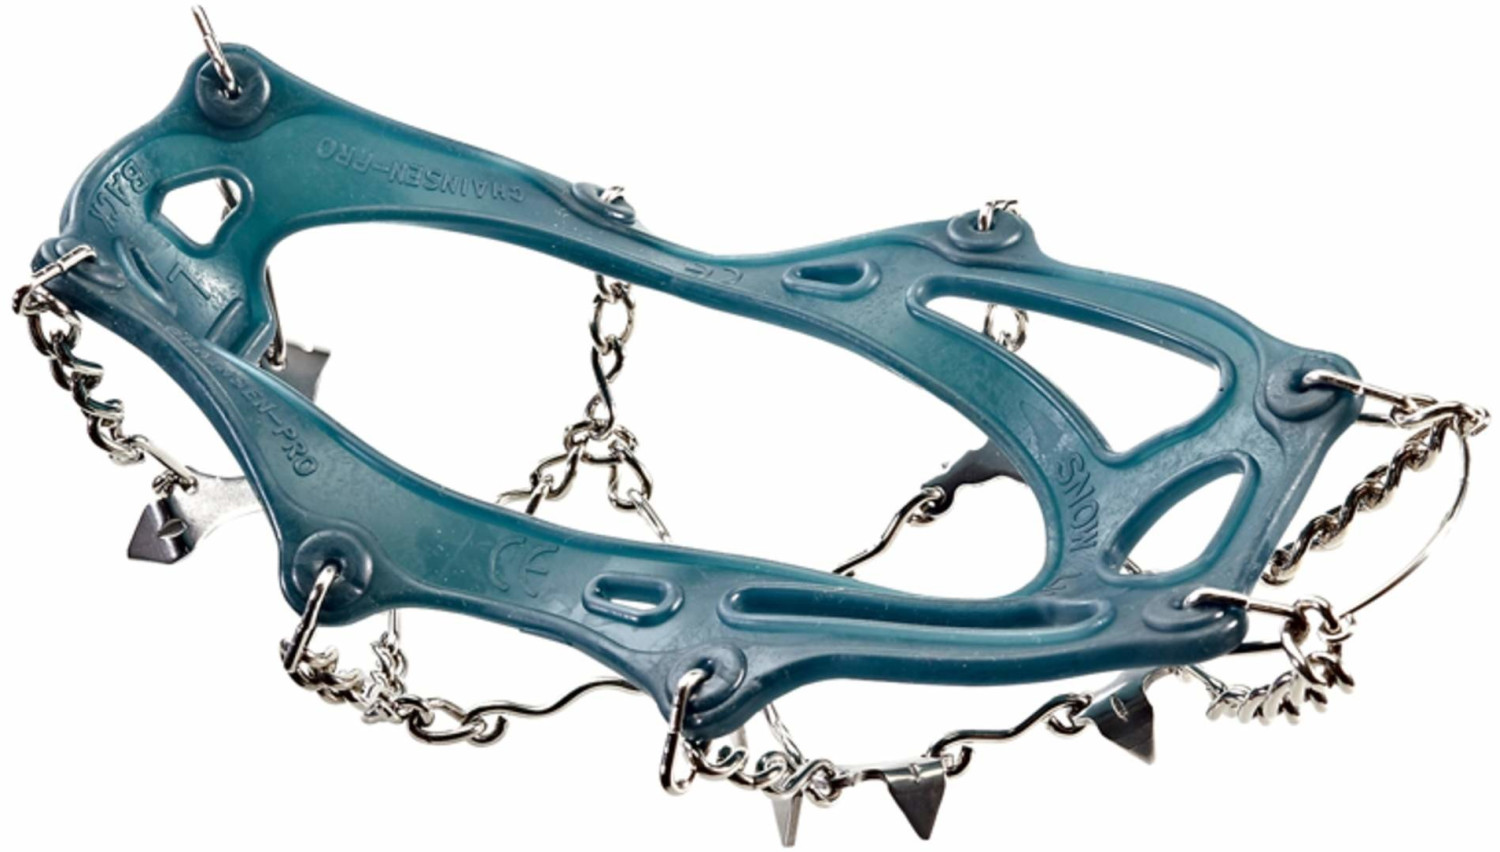 Snowline Chainsen Pro blau ab 42,00 €